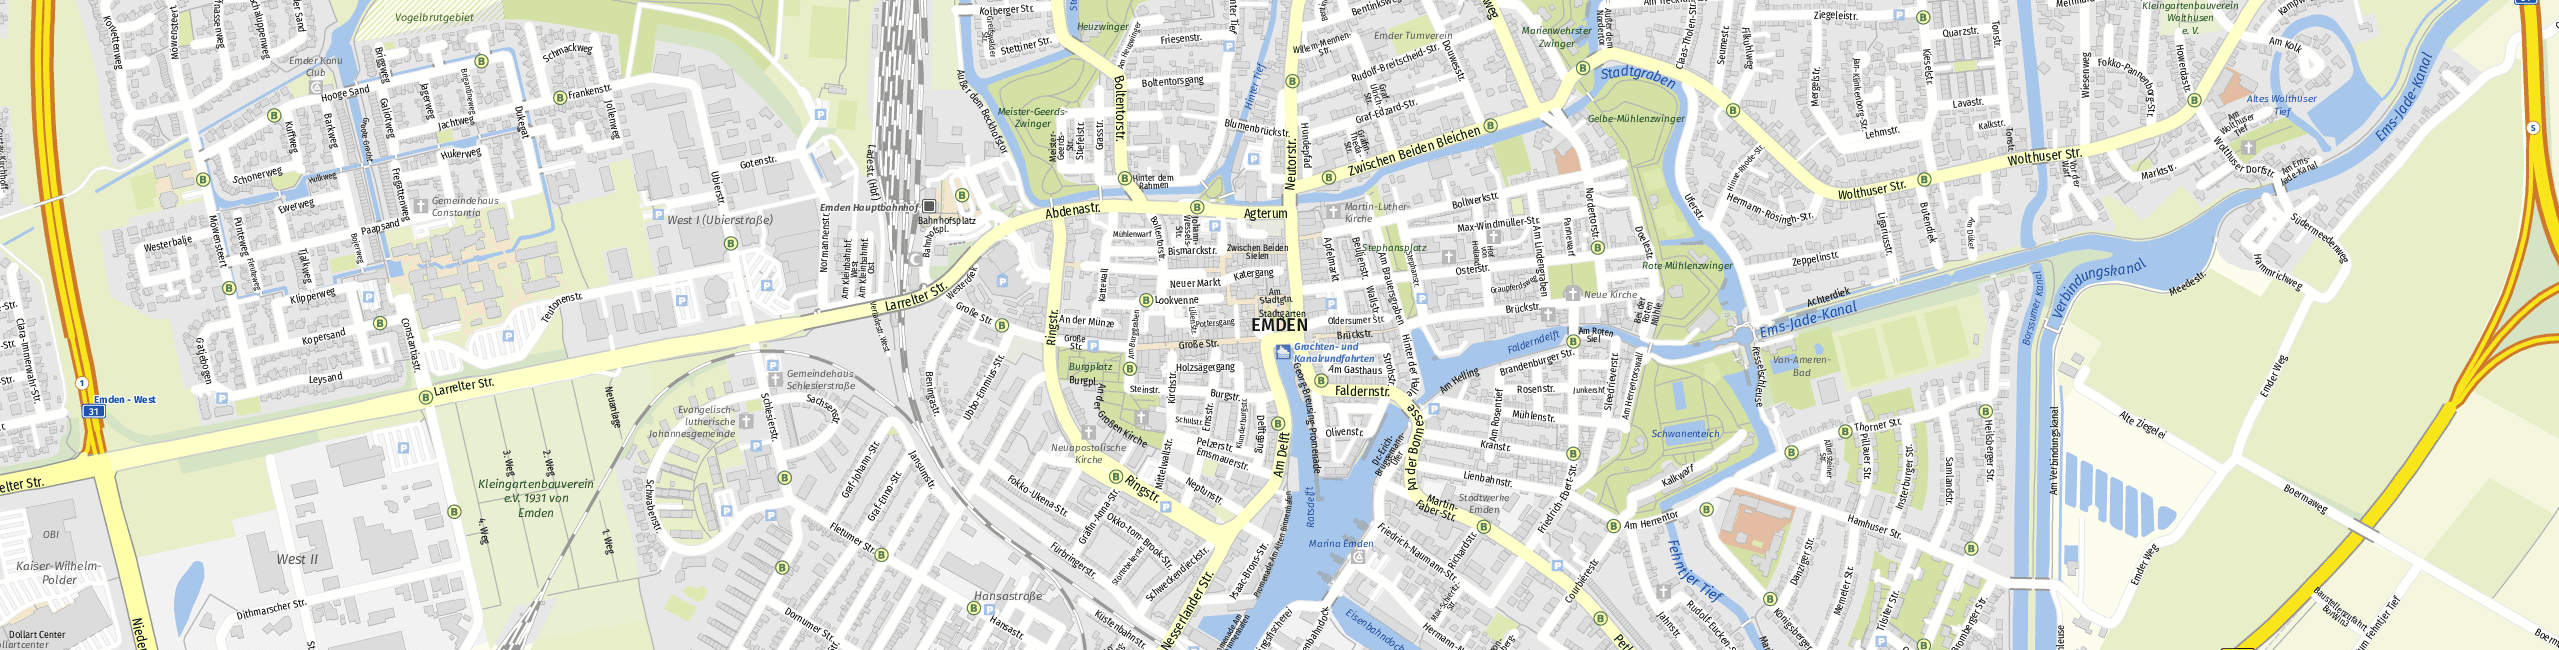 Stadtplan Emden zum Downloaden.